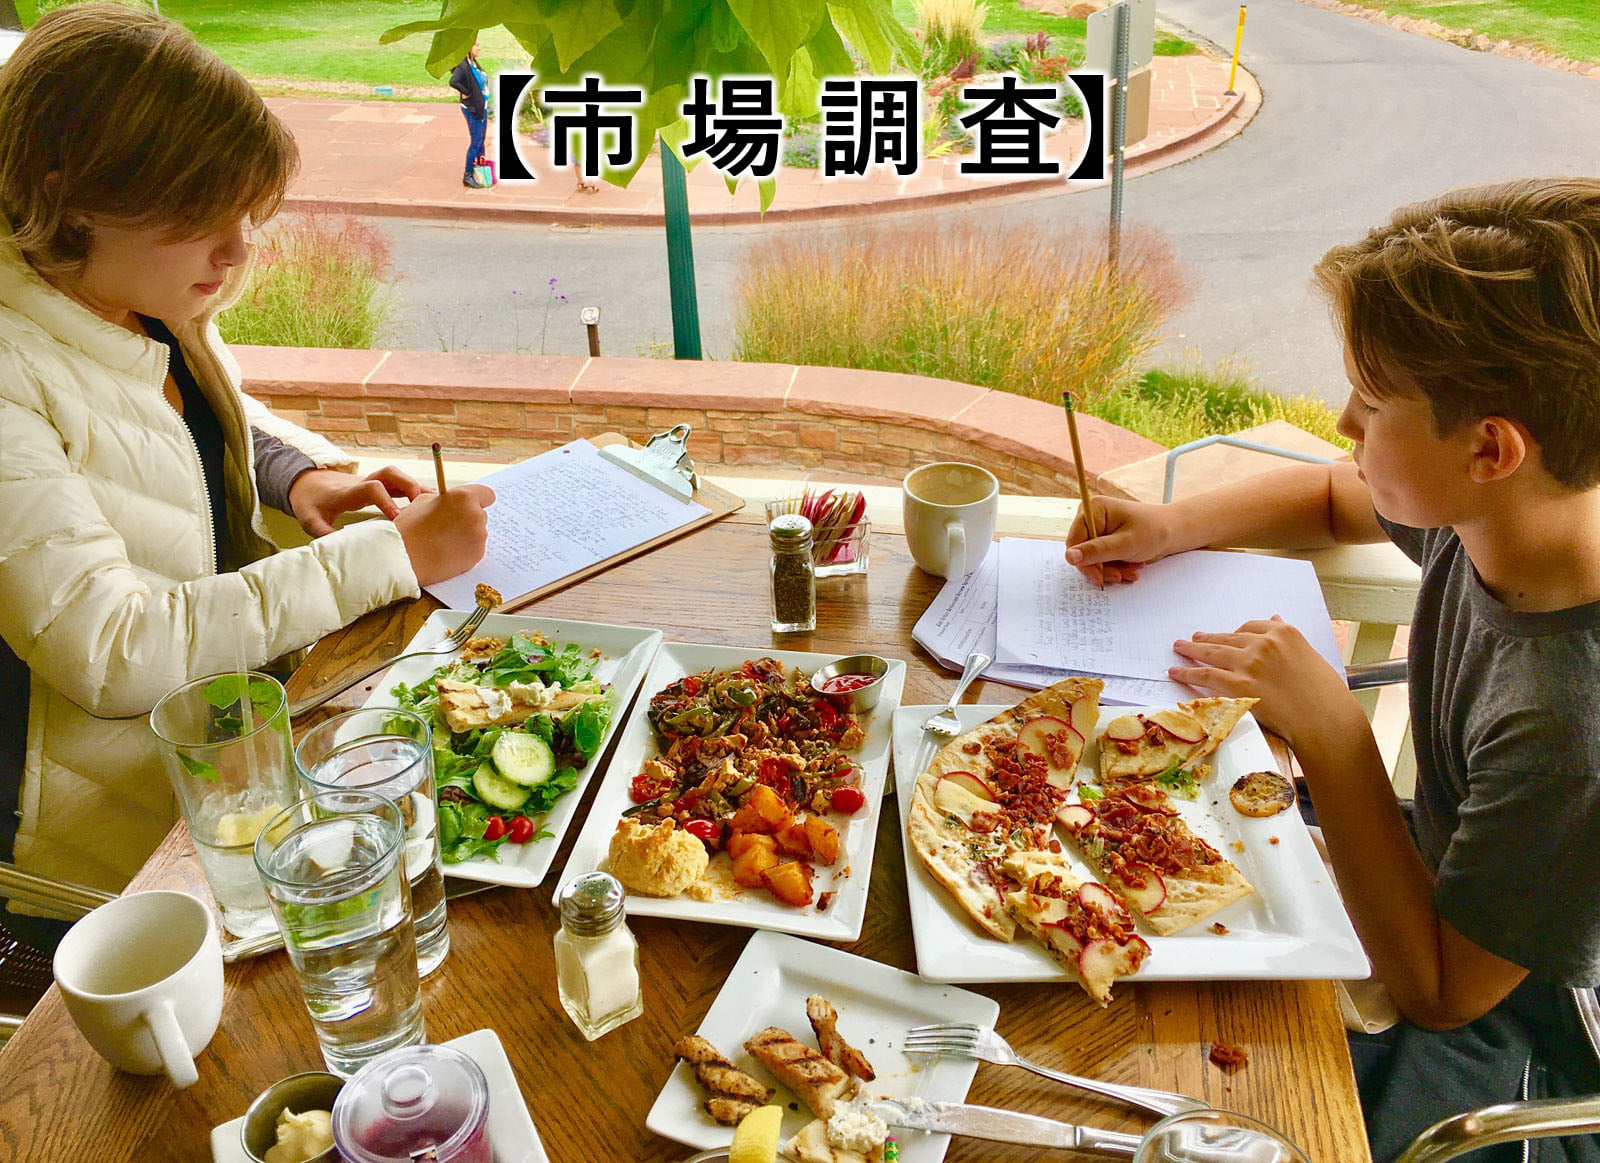 飲食店コンサルティング 食ビジネスコンサルティング フードビジネスコンサルティング サービス業コンサルティング 札幌 北海道